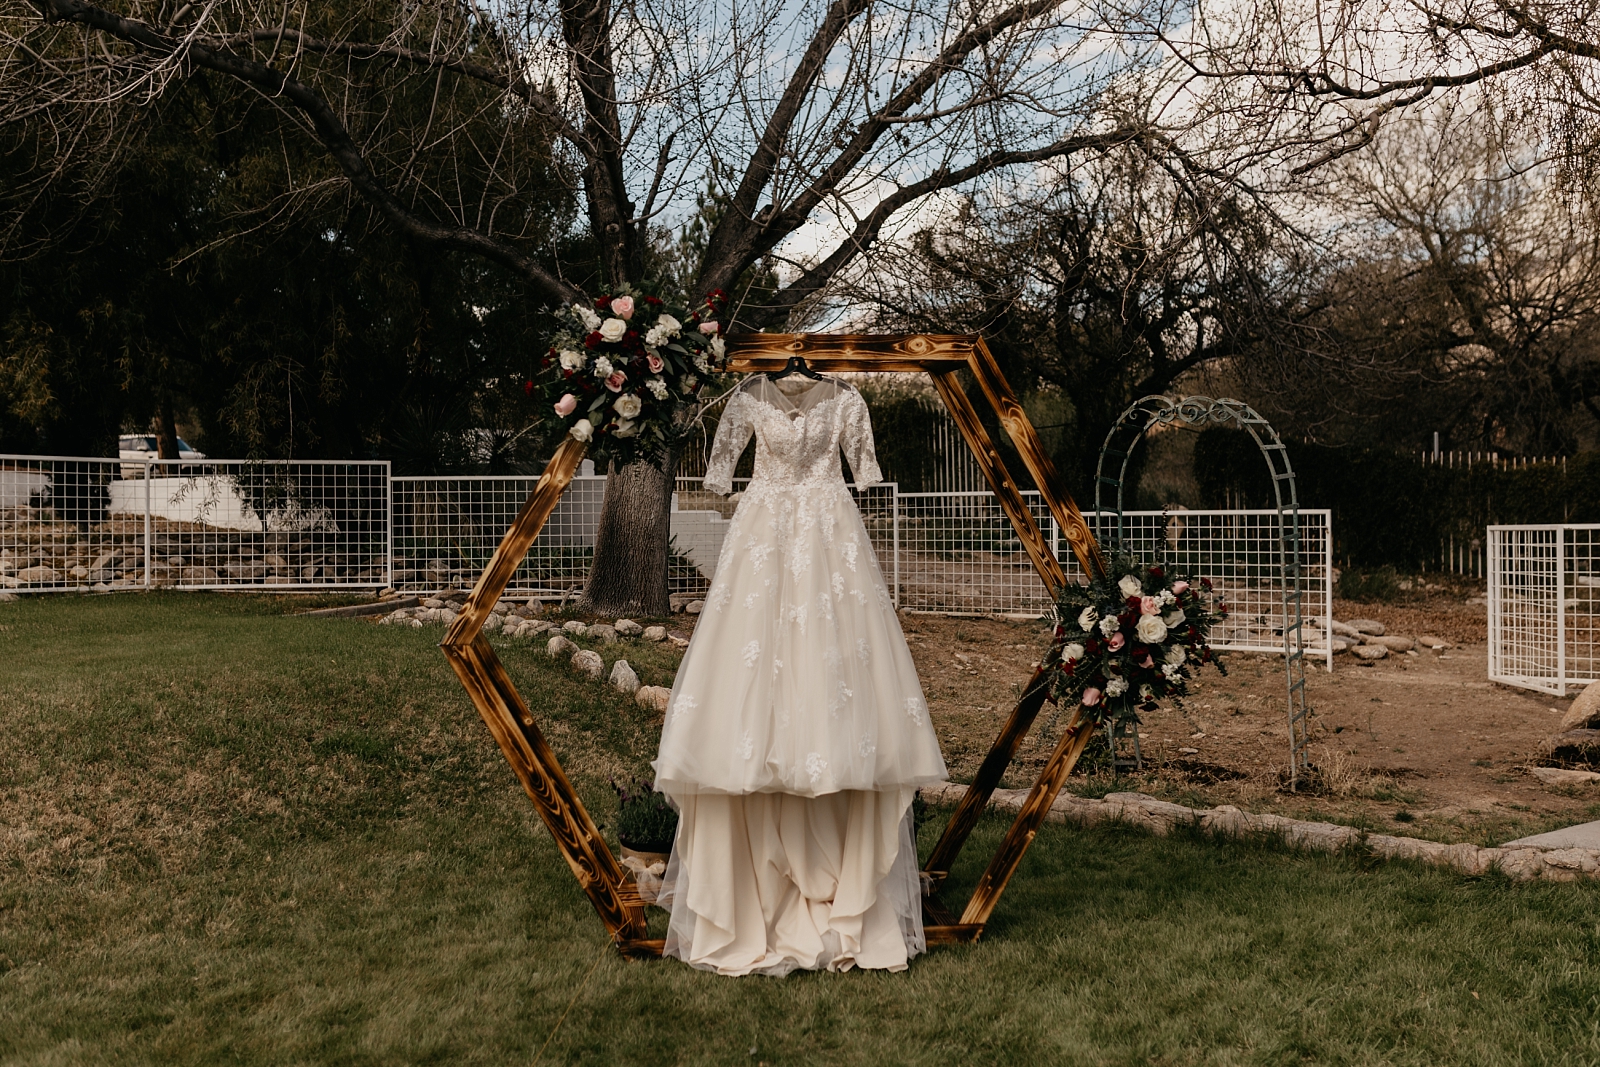 Hanging wedding dress photo Tucson AZ